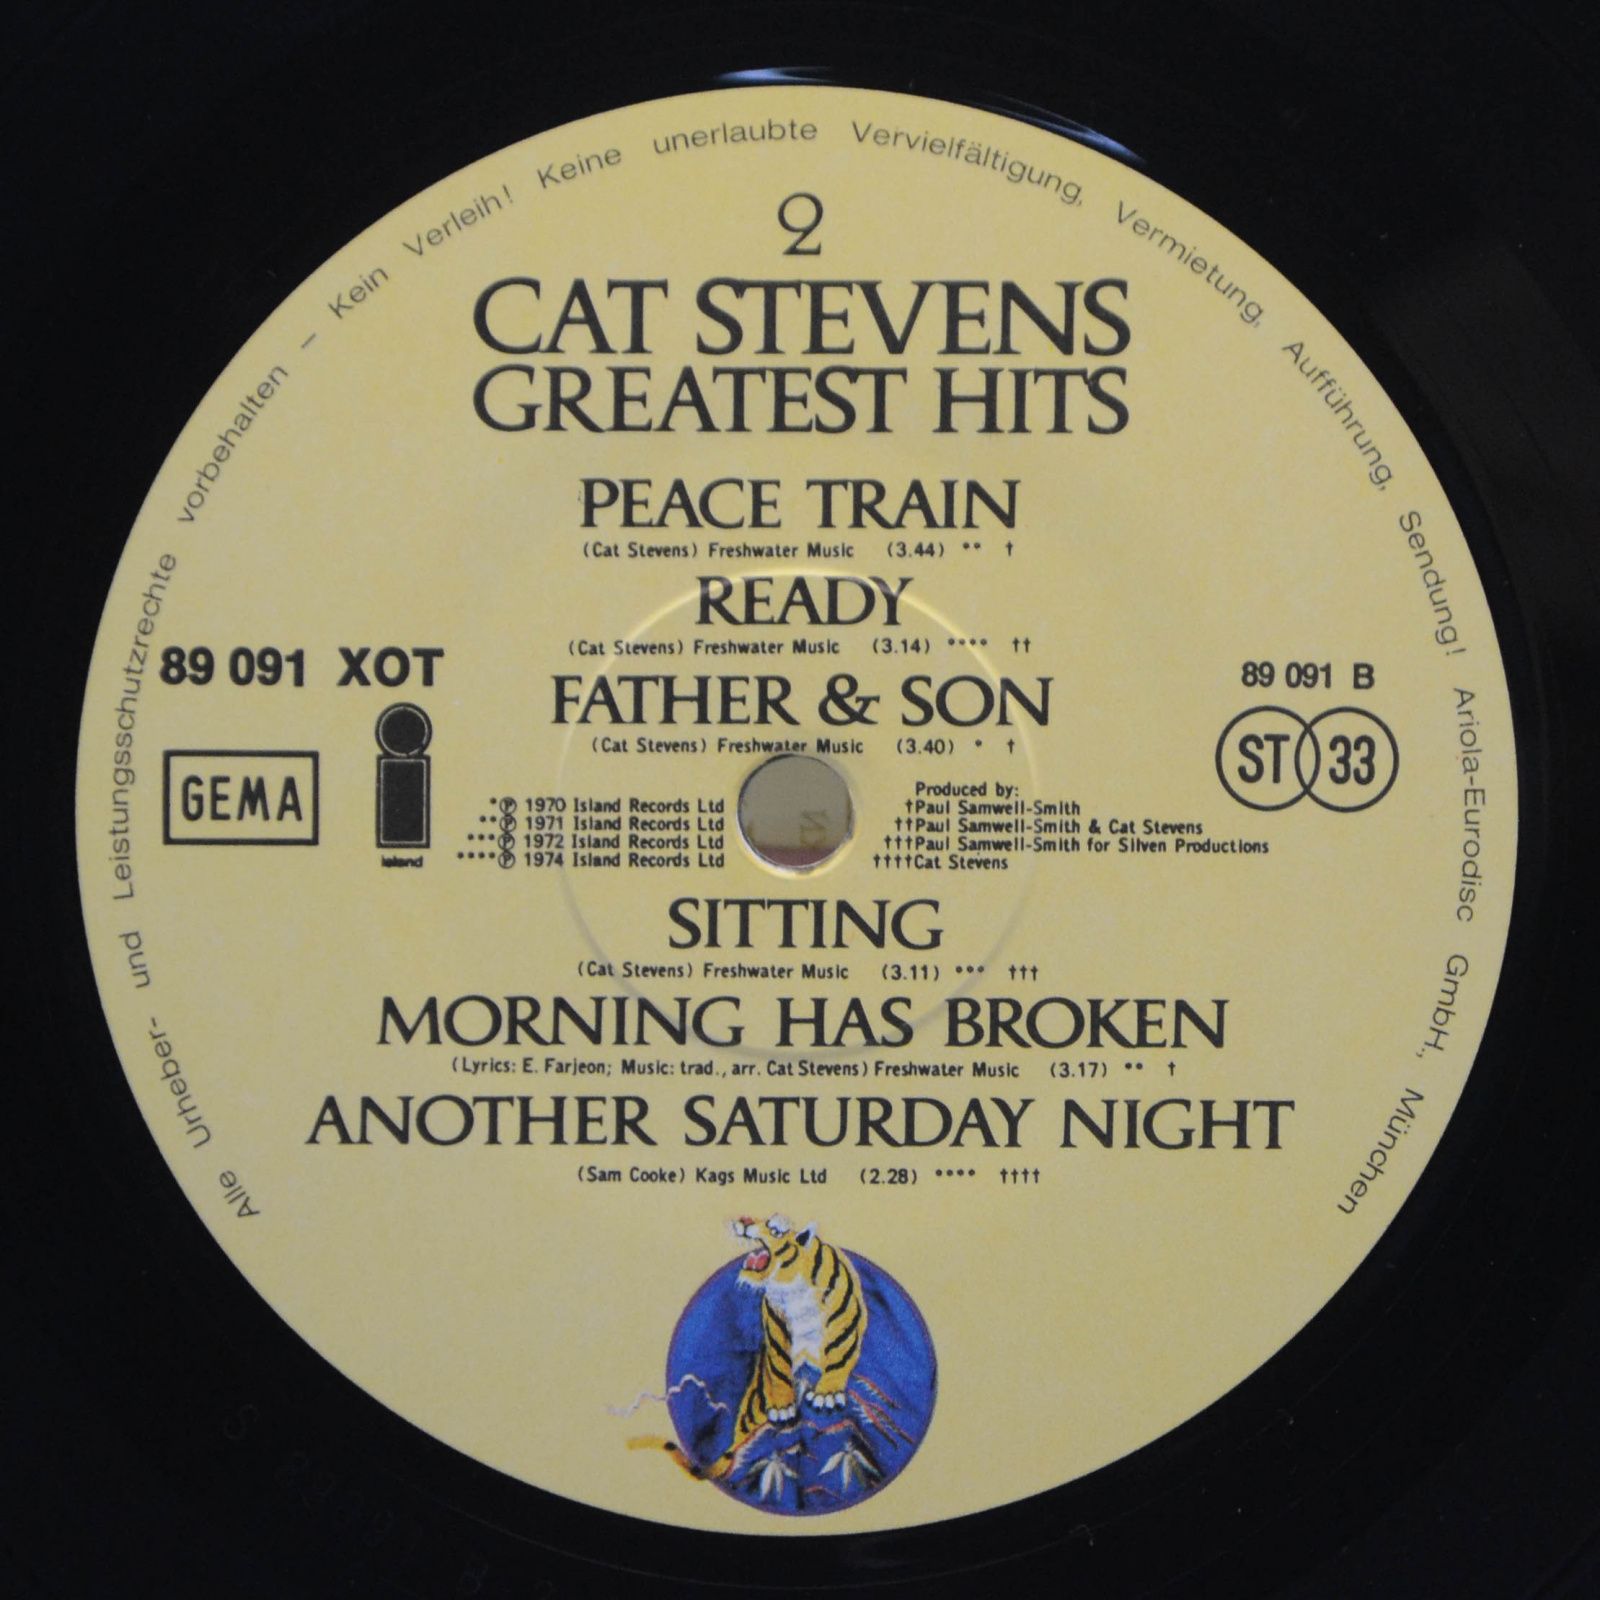 Cat Stevens — Greatest Hits, 1975